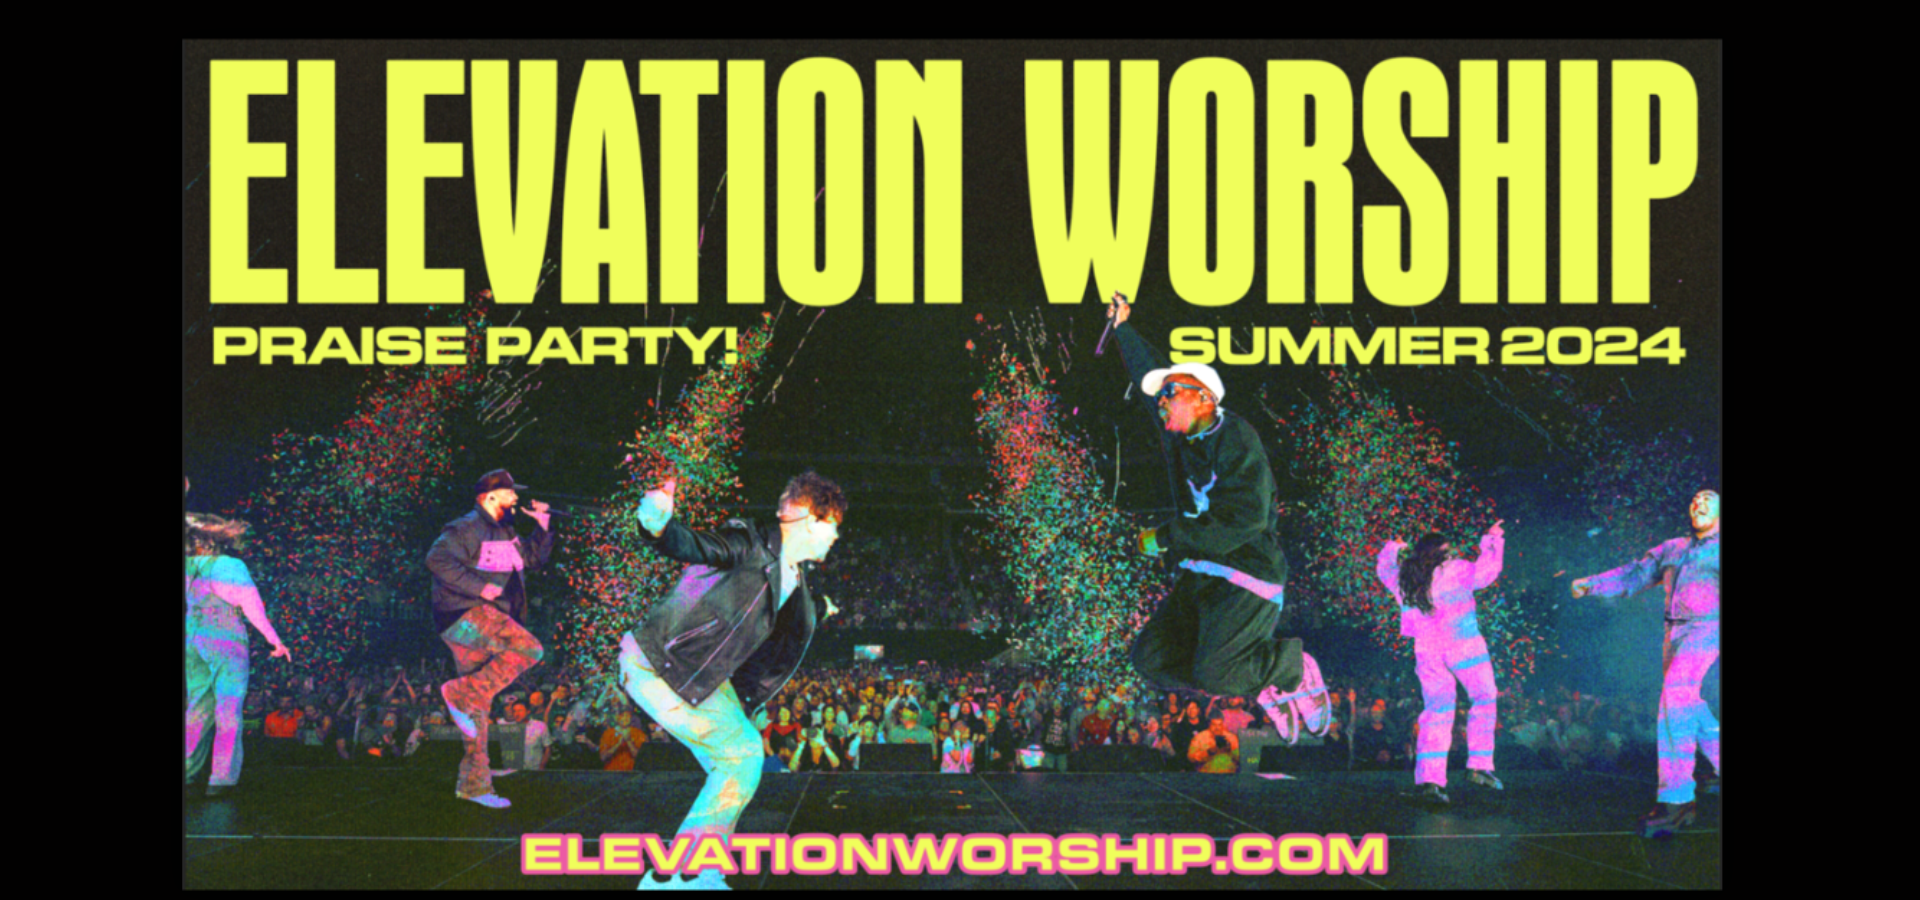 Elevation Worship Announces New Tour: Praise Party Summer 2024